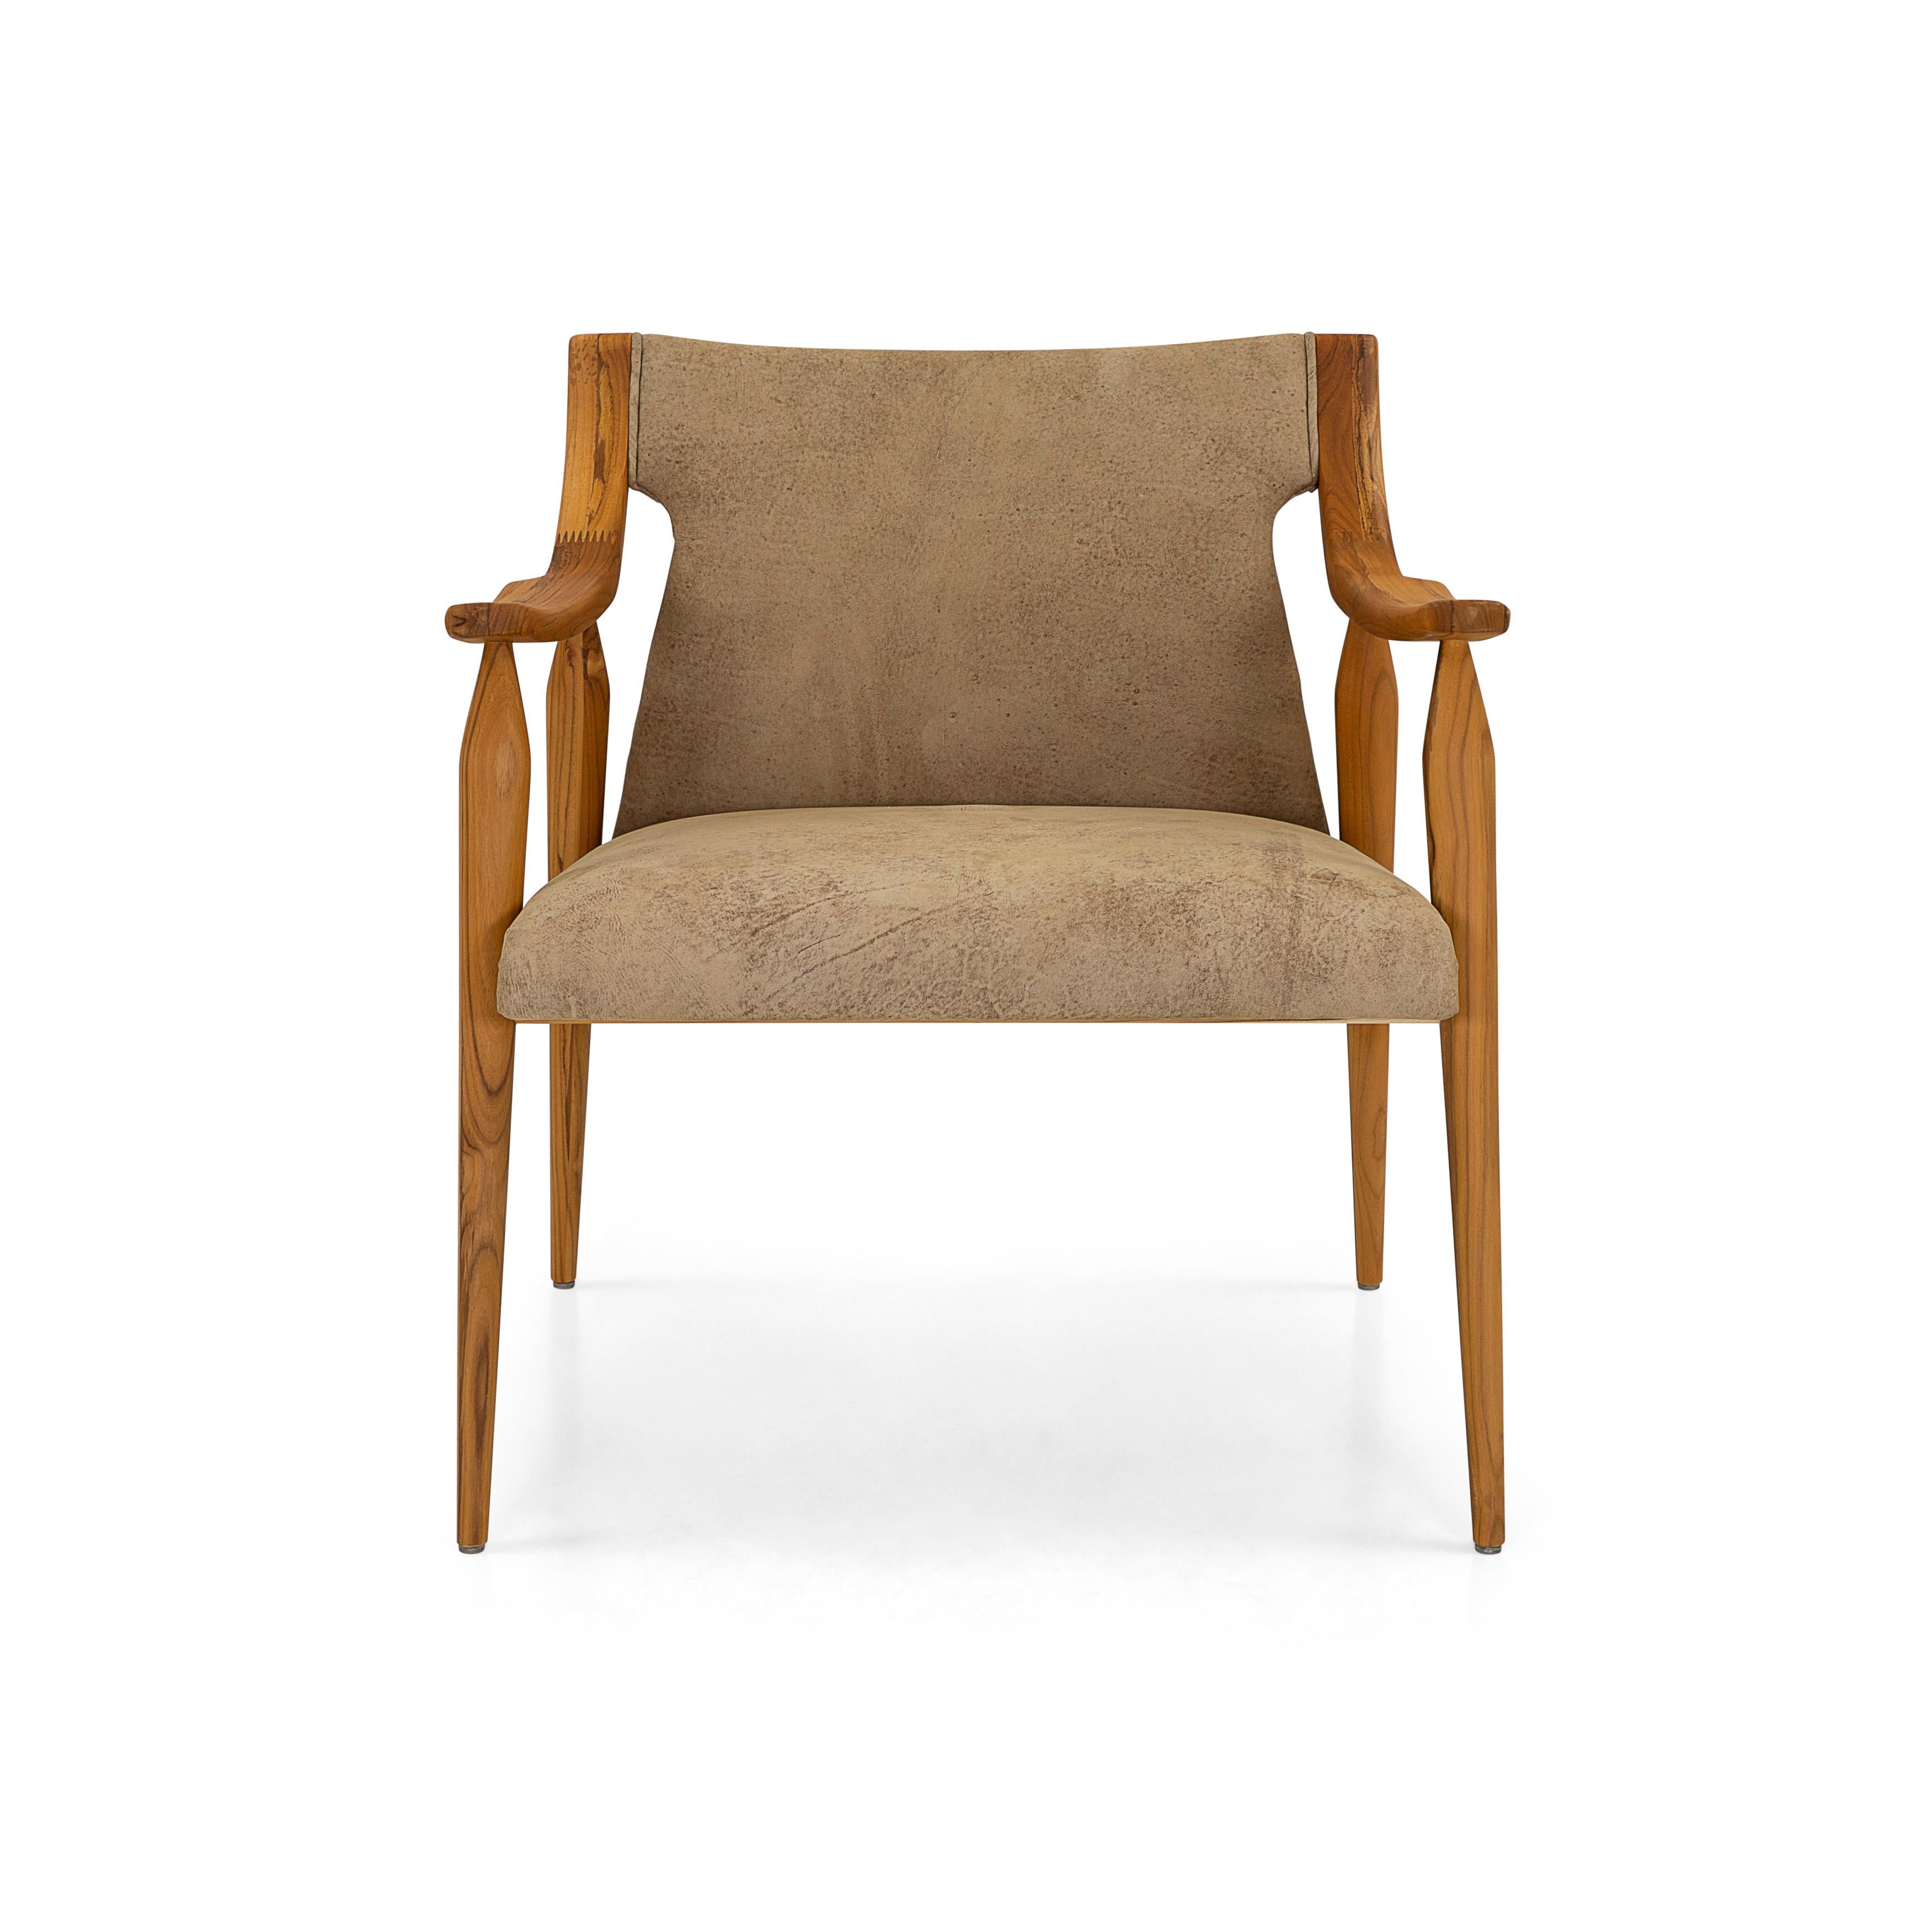 Der Sessel Mince ist mit seinen geschwungenen Armlehnen und den Spindelbeinen in Teakholzoptik und den braunen, schönen Lederkissen eine einladende Ergänzung für jeden Raum in Ihrem modernen Zuhause. Dieser moderne Stuhl hat ein klares,